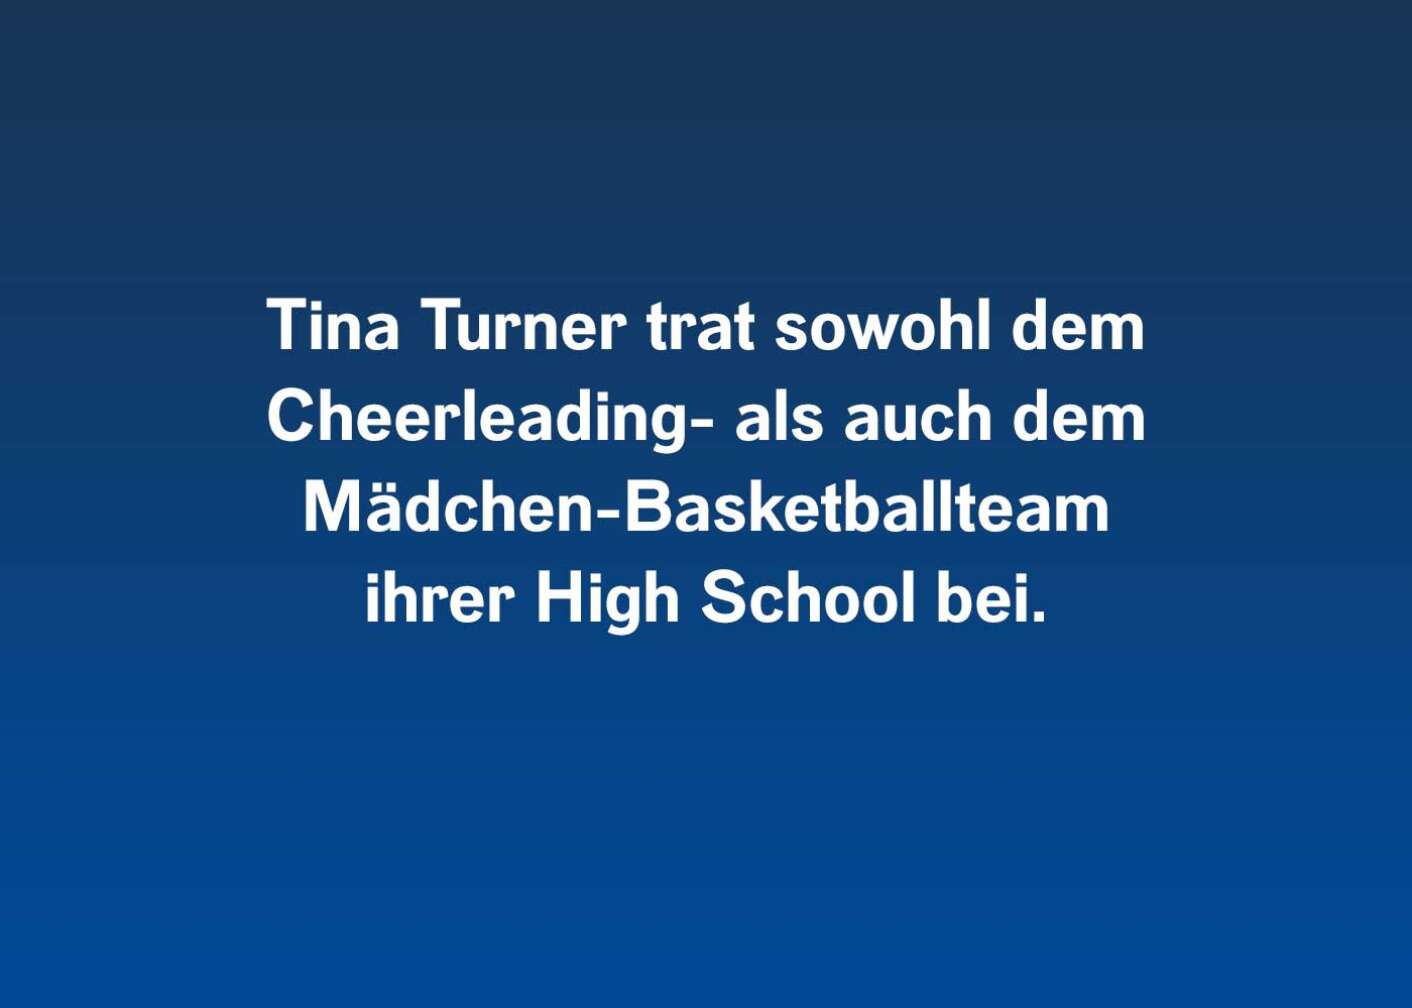 Tina Turner trat sowohl dem Cheerleading- als auch dem Mädchen-Basketballteam ihrer High School bei.